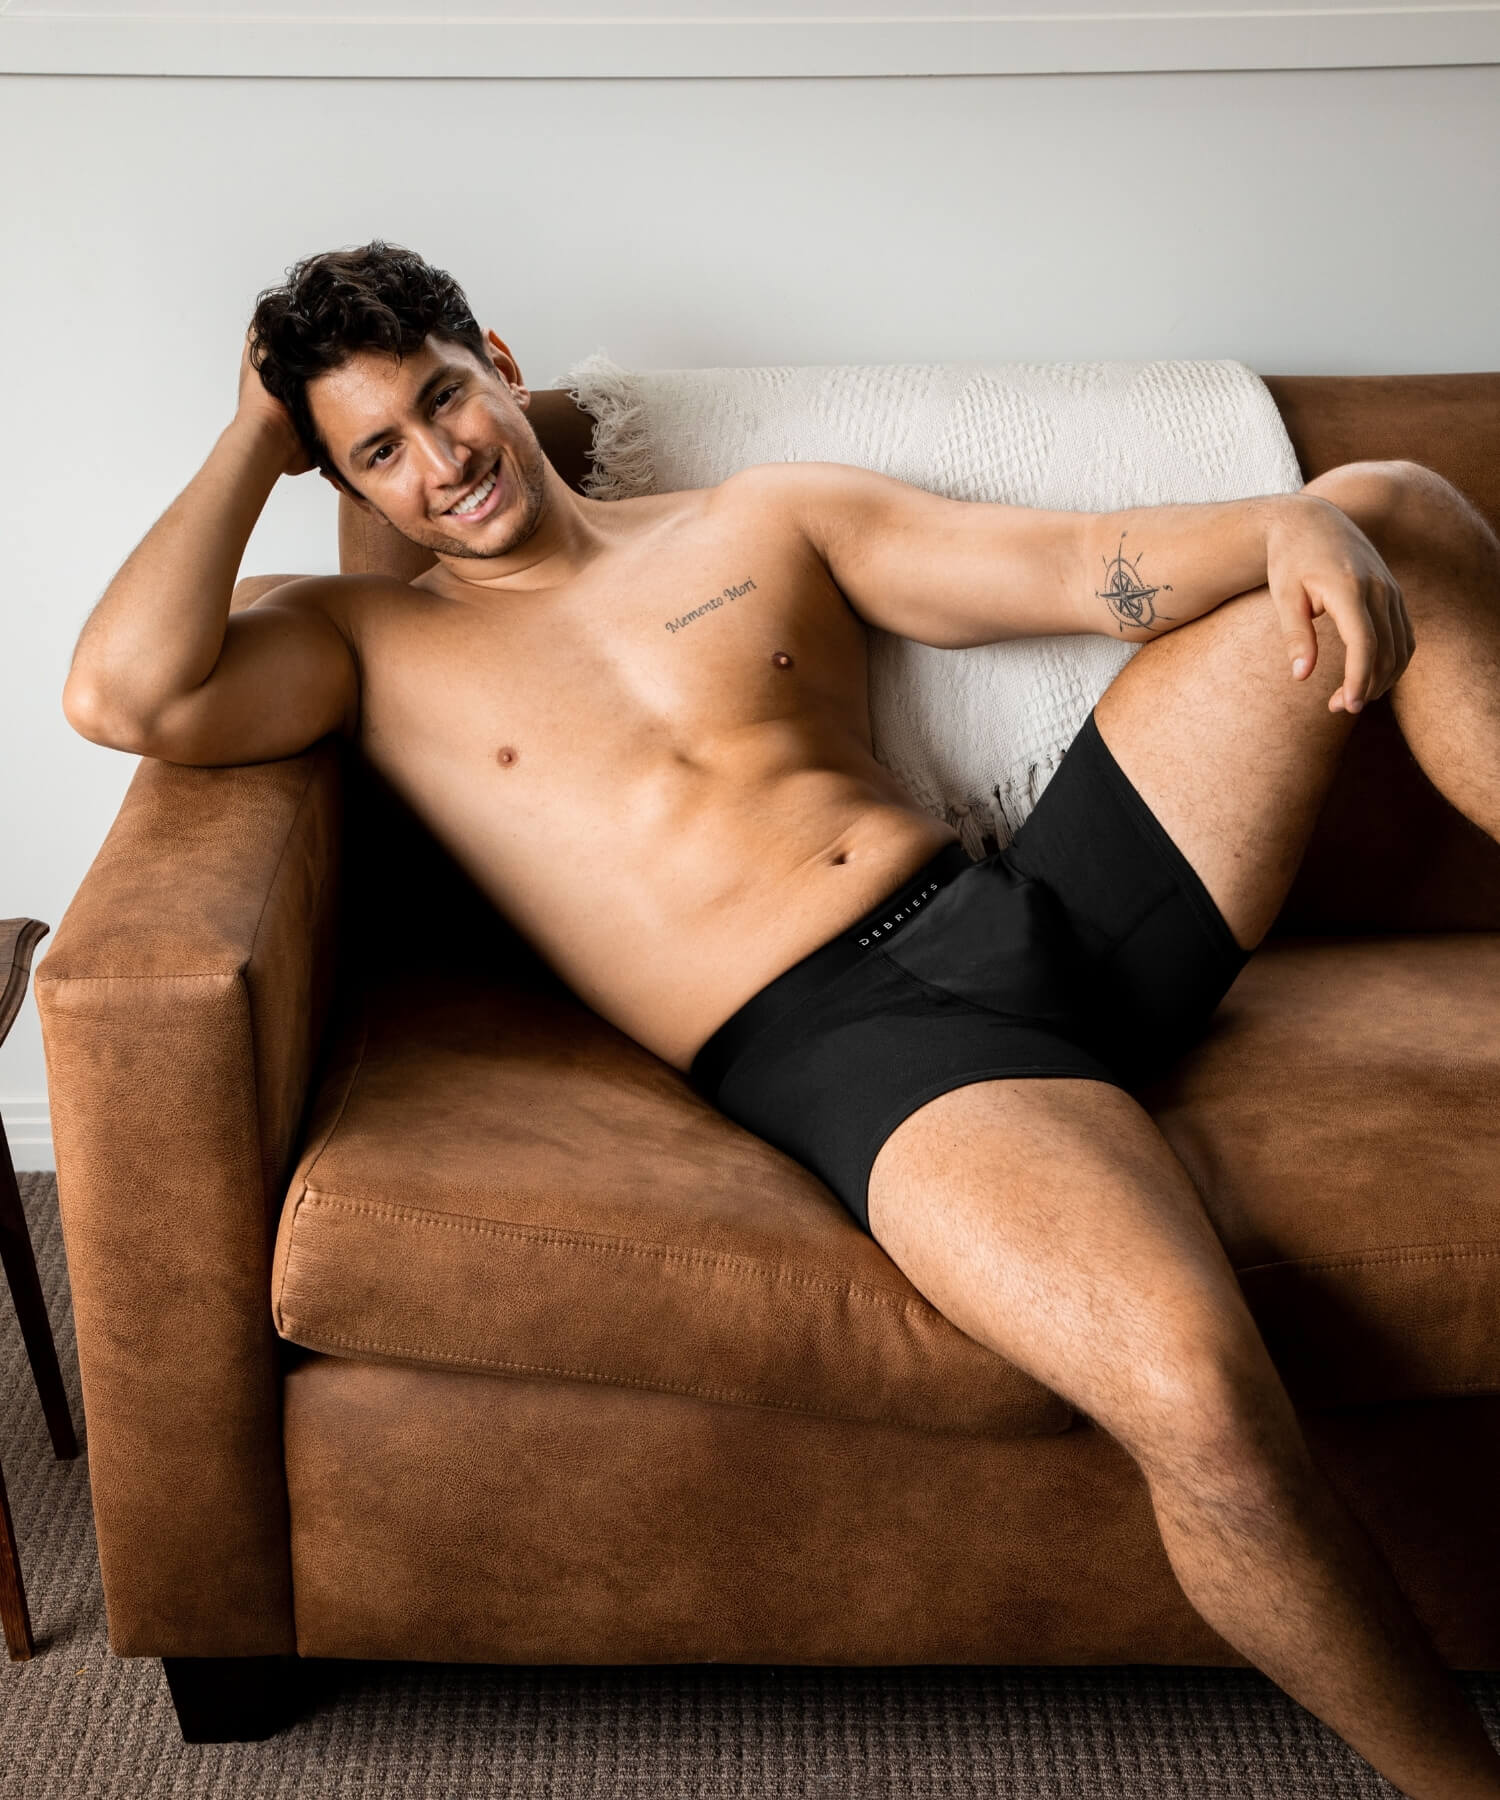 Man sitting on couch smiling wearing black Debriefs boxer briefs underwear